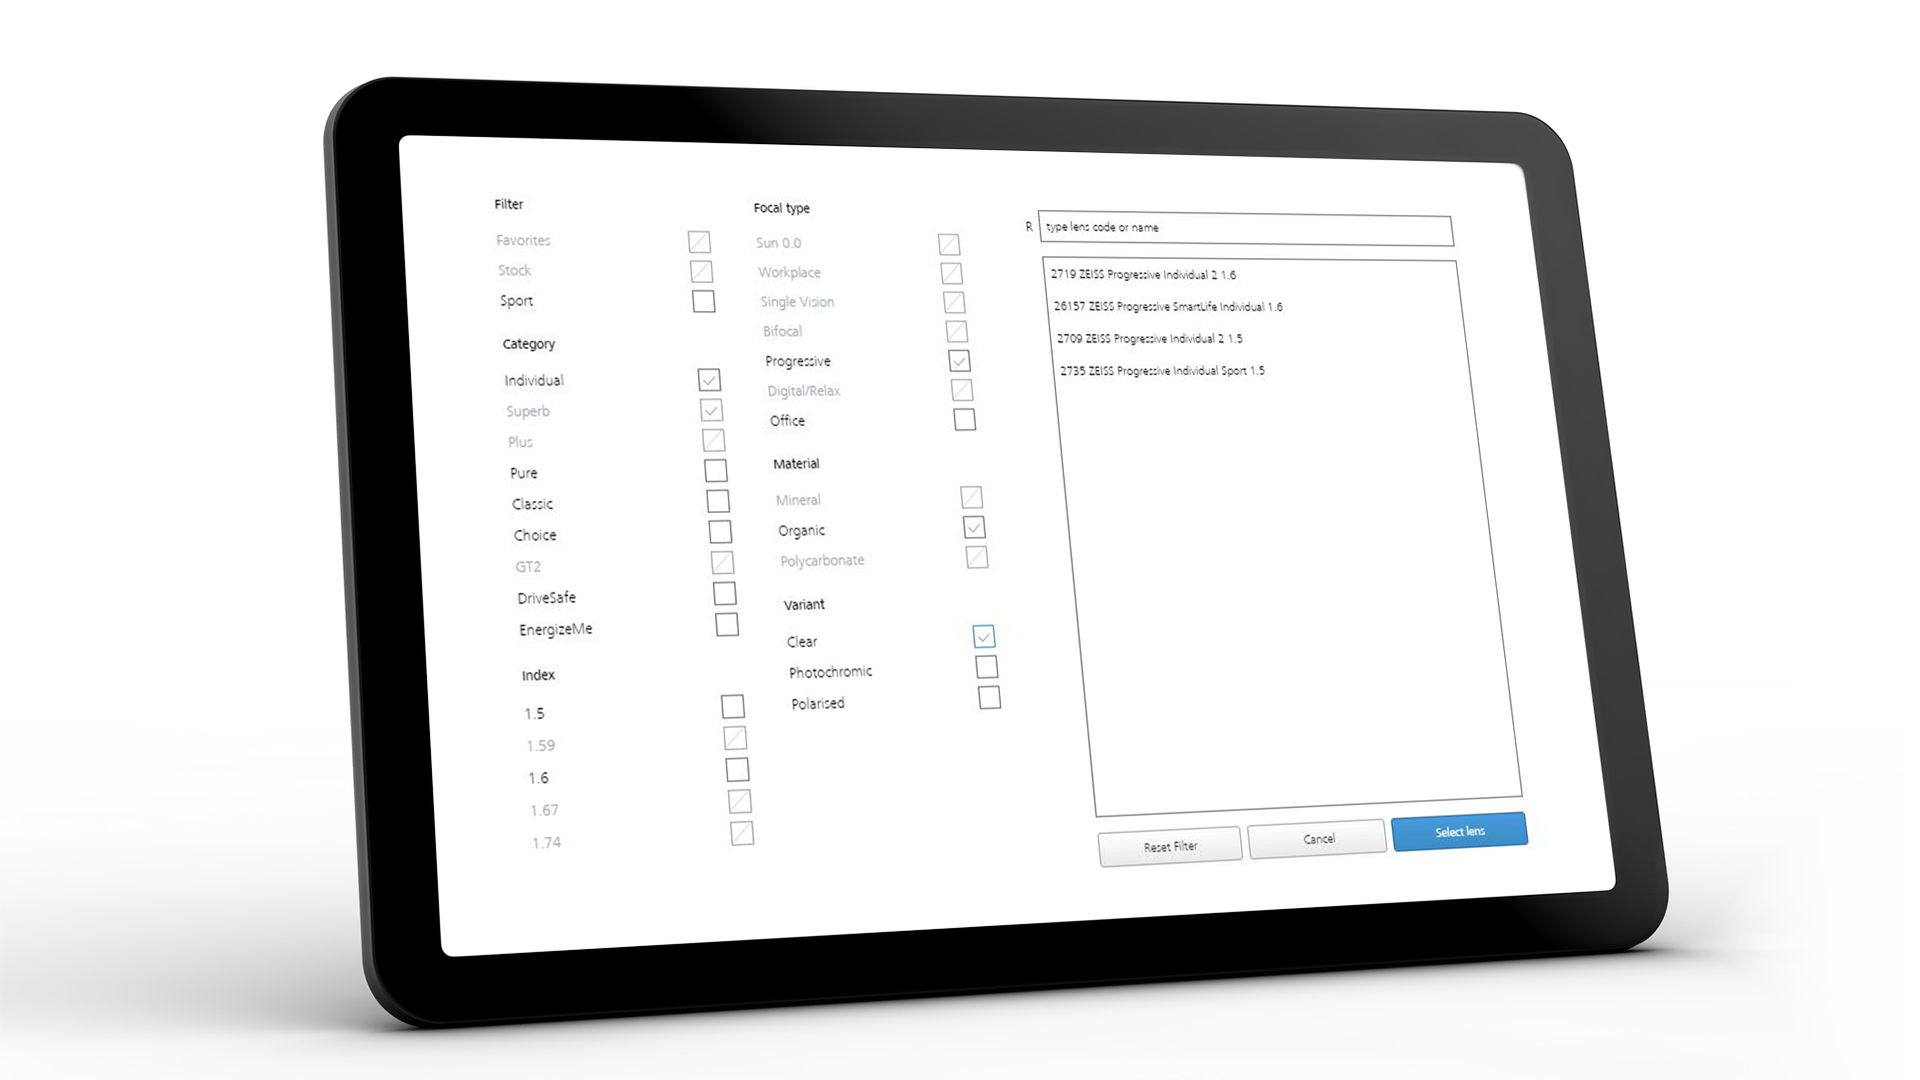 Obrazovka tabletu zobrazující rozhraní ZEISS VISUSTORE pro rady, jaké informace zadávat. 